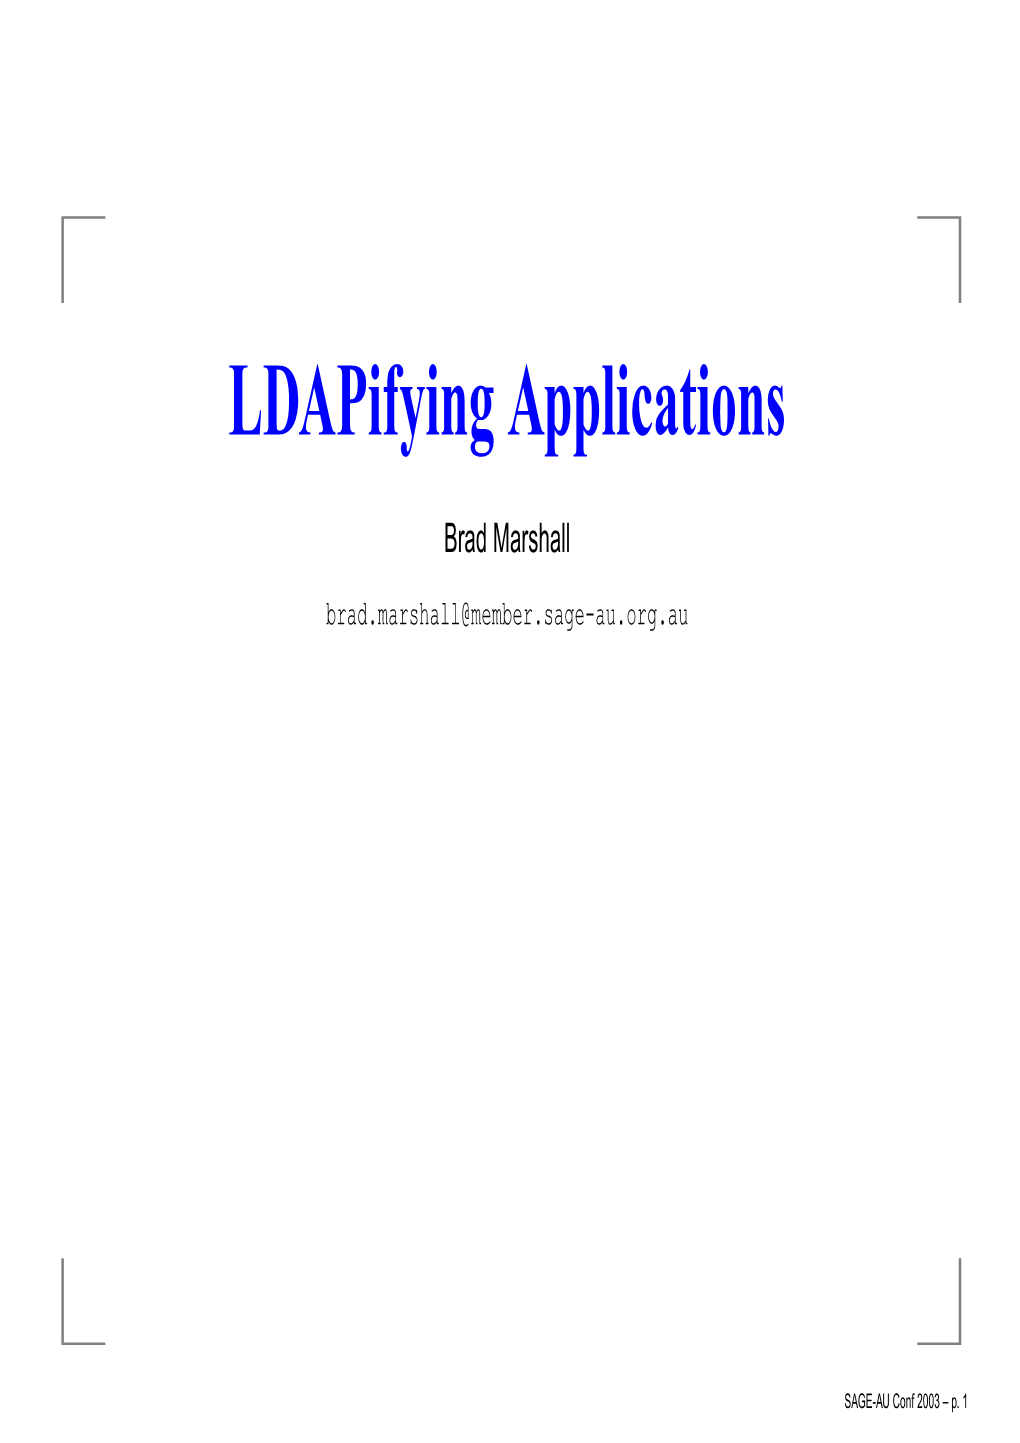 PHP and LDAP - Binding